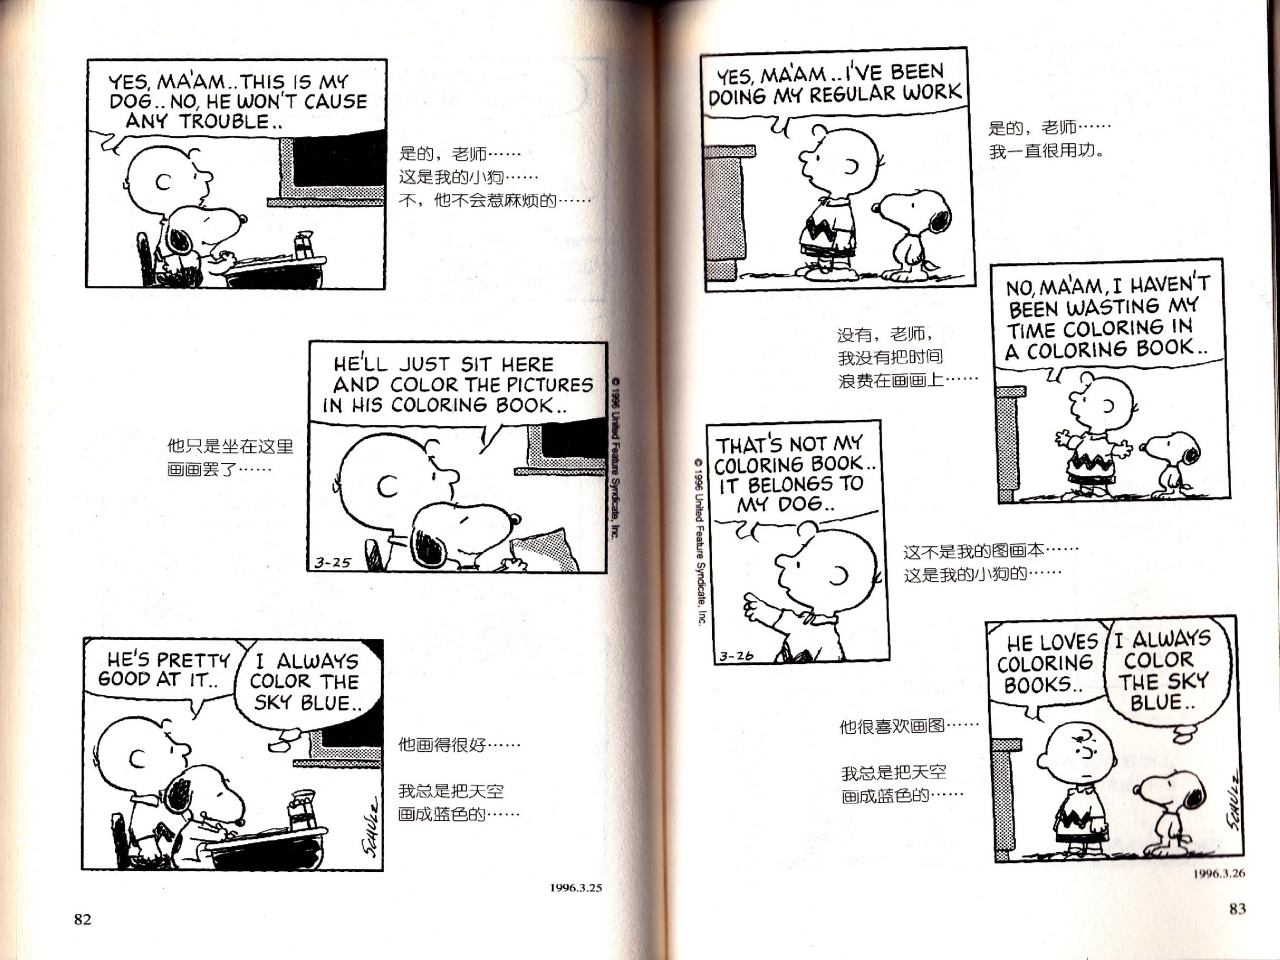 中国語でスヌーピーの漫画を読む 5月22日 るもんが の外国語学習日記